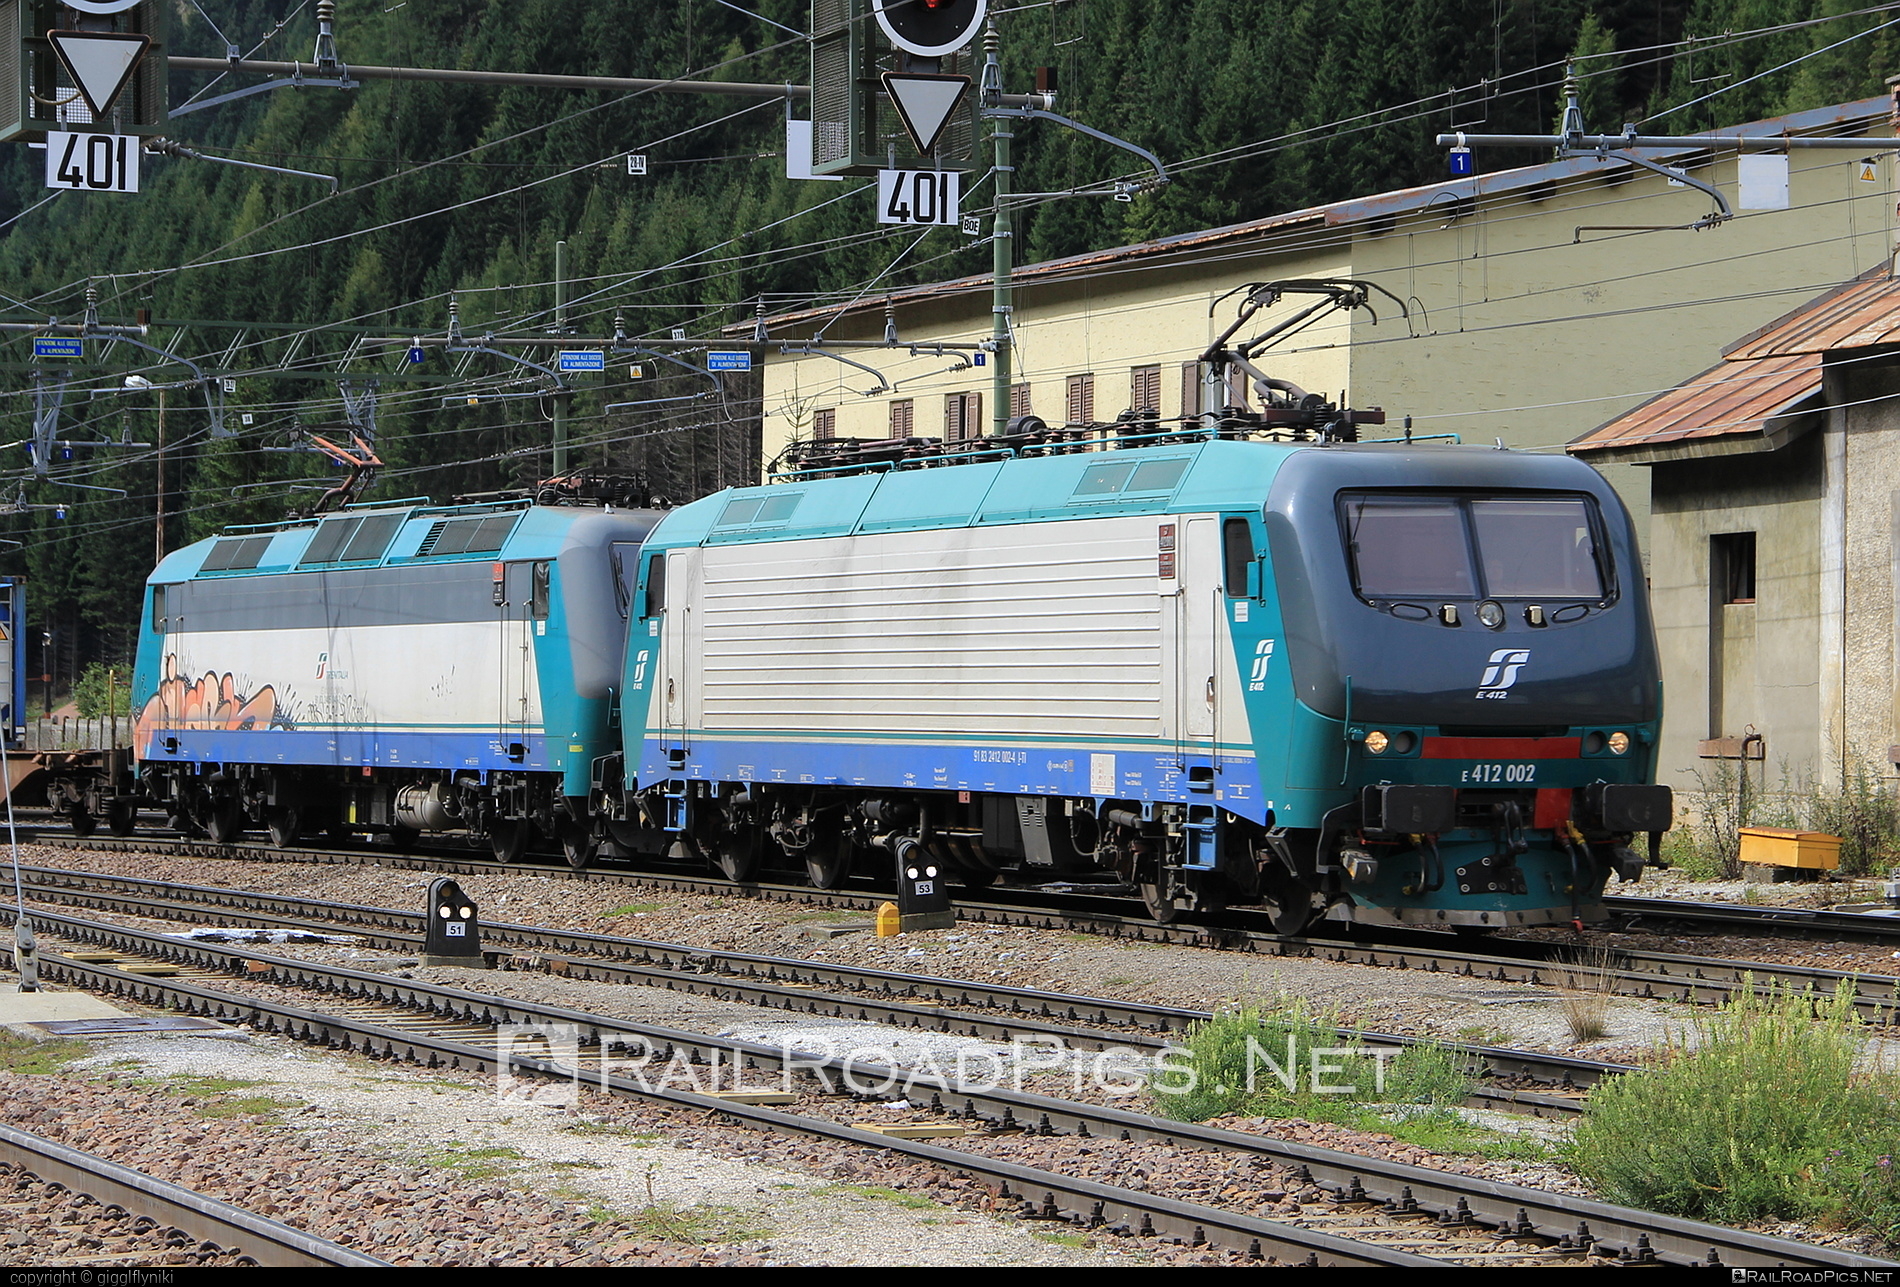 FS Class E.412 - E412 002 operated by Mercitalia Rail S.r.l. #e412 #ferroviedellostato #fs #fsClassE412 #fsitaliane #mercitalia #trenitalia #trenitaliaspa